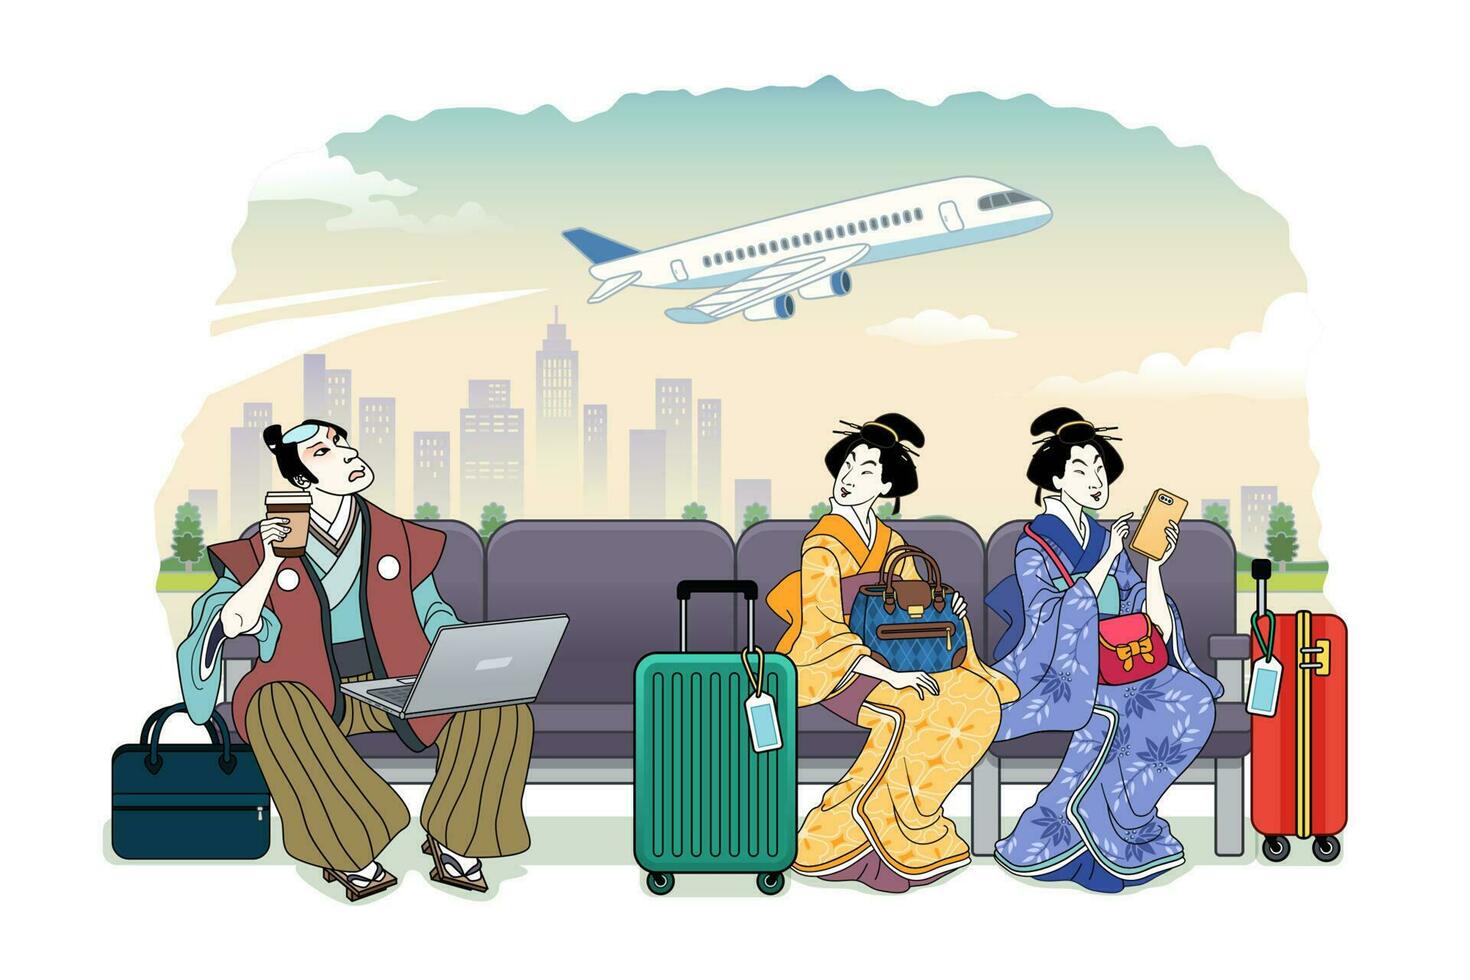 ukiyo-e stile persone in attesa loro volo a terminale vettore